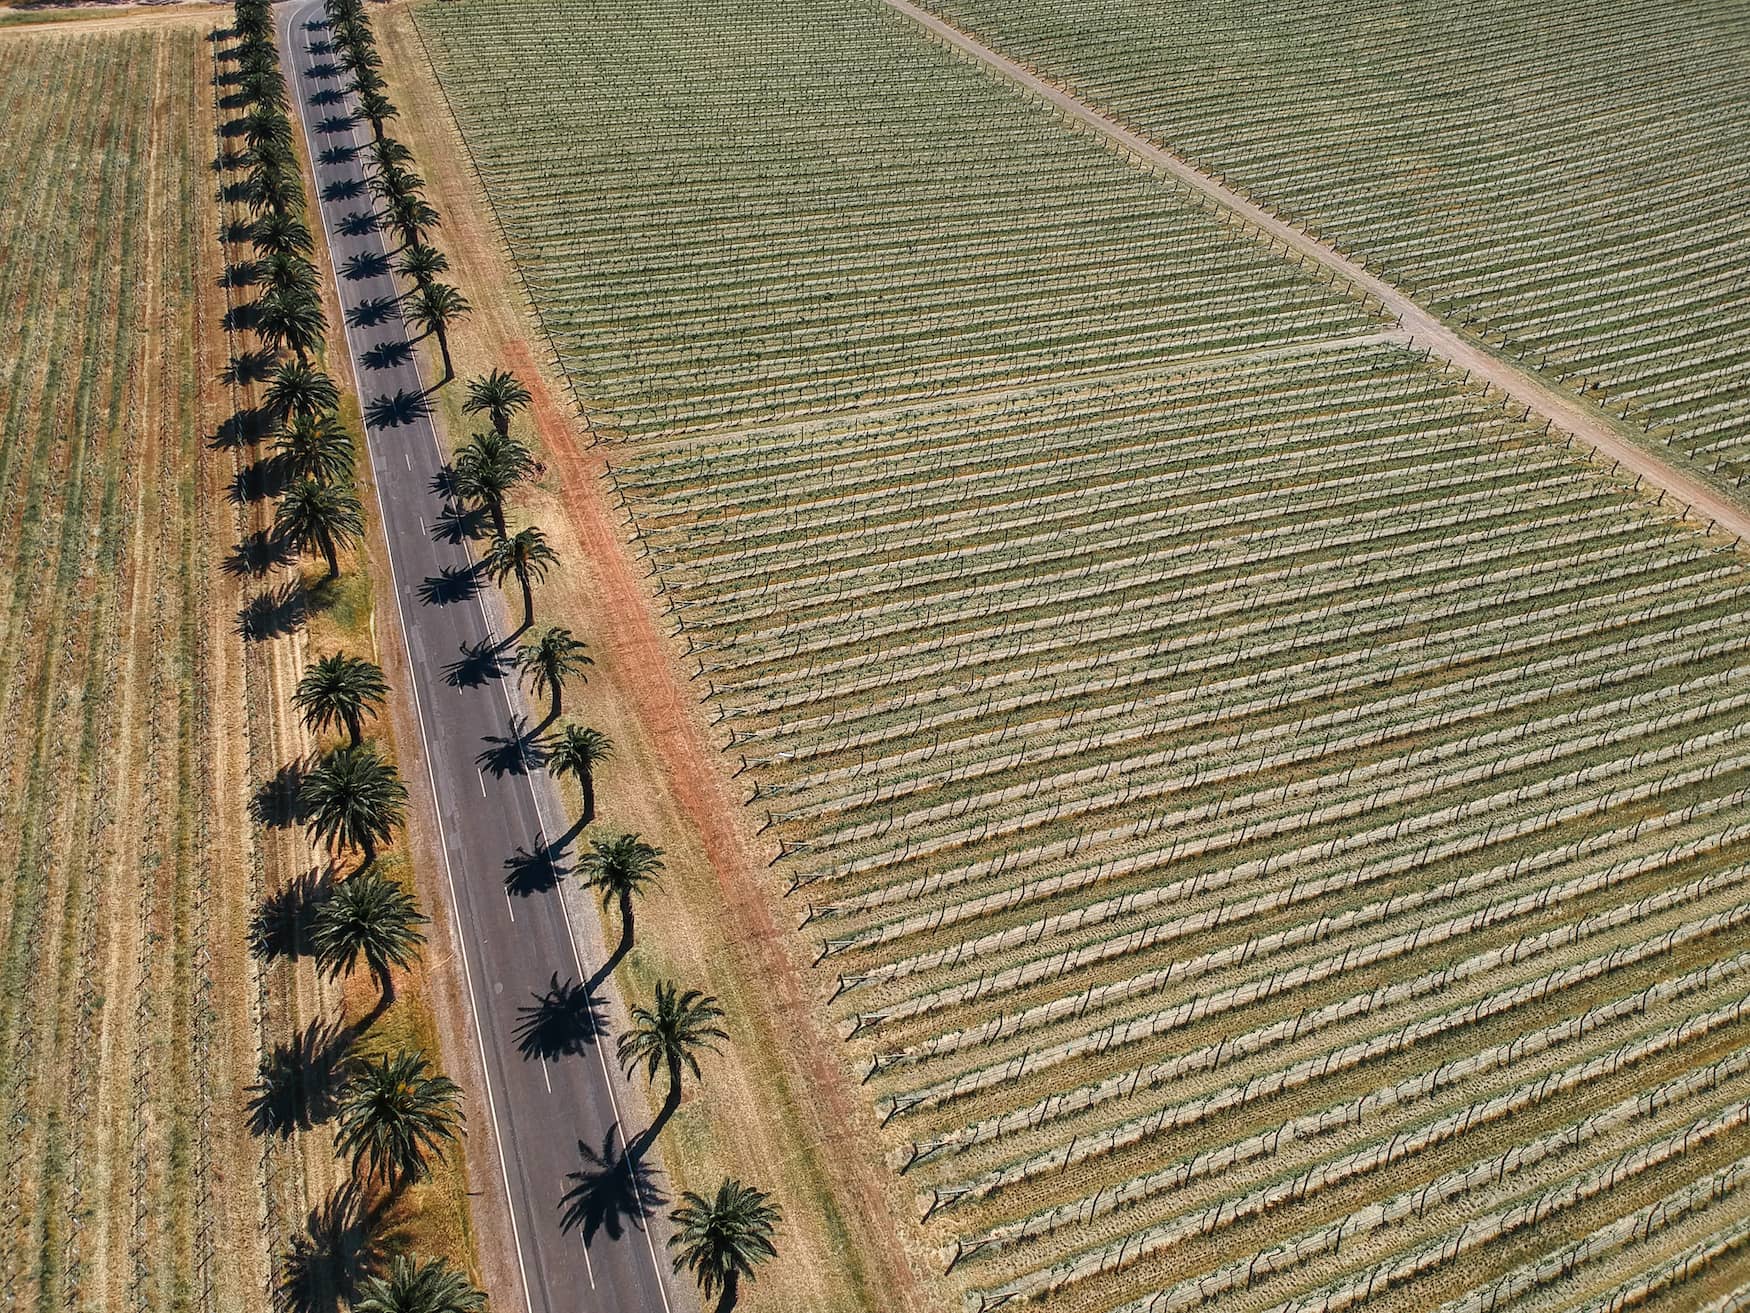 Weingebiet im Süden Australiens auf einem Roadtrip